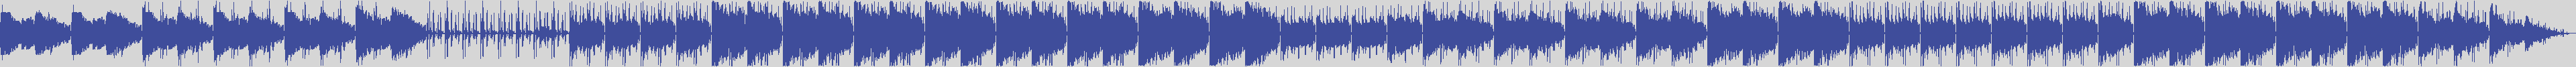 noclouds_chillout [NOC137] The Vip - Okrim [Original Mix] audio wave form